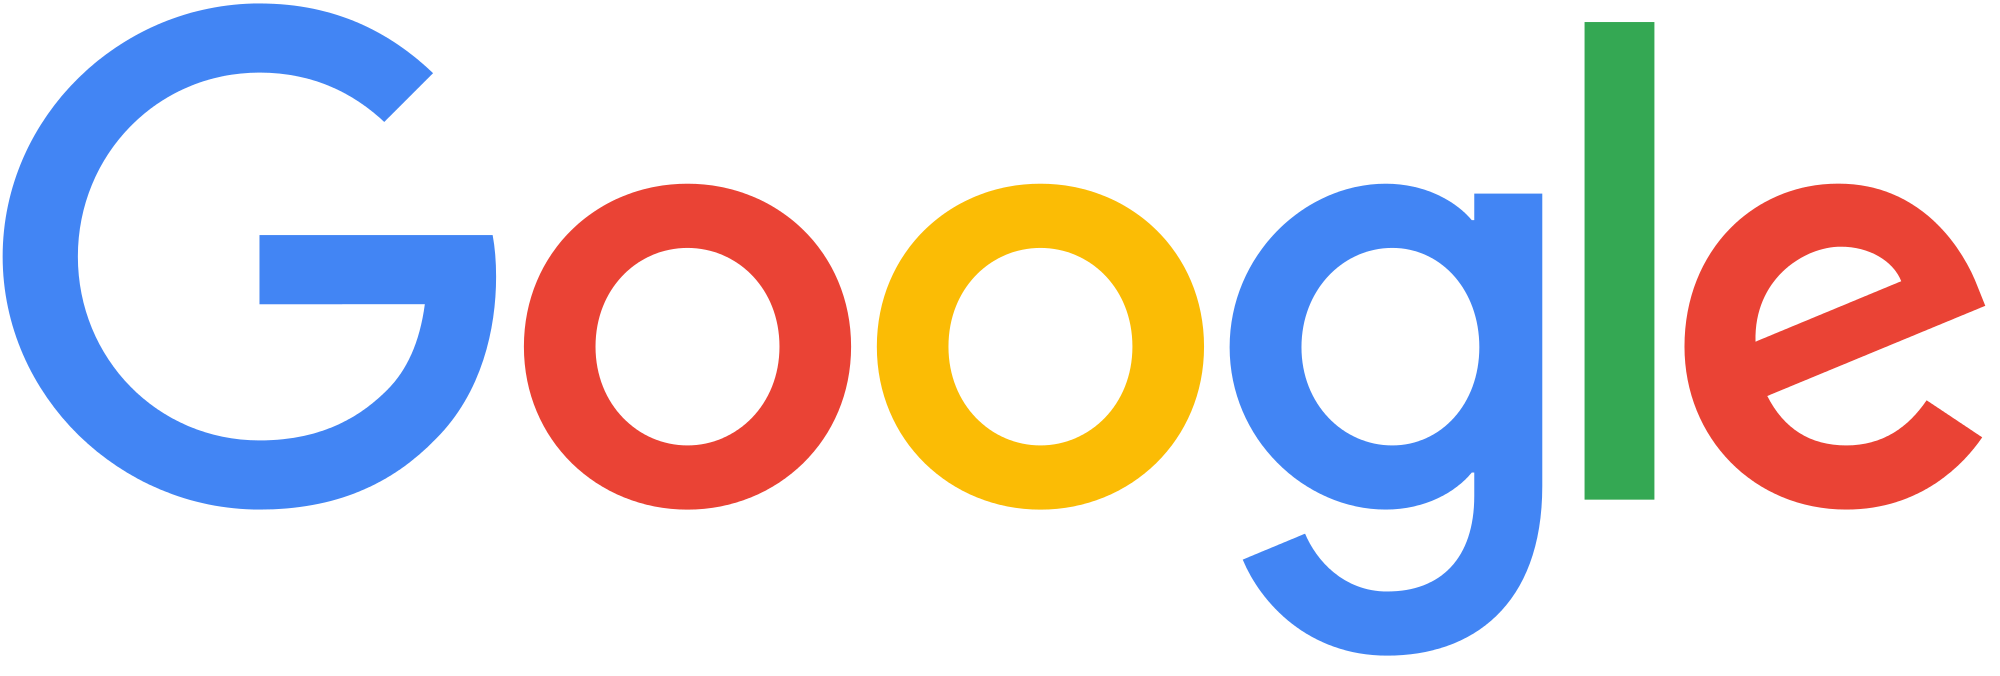 Google New Logo Png - KibrisPDR